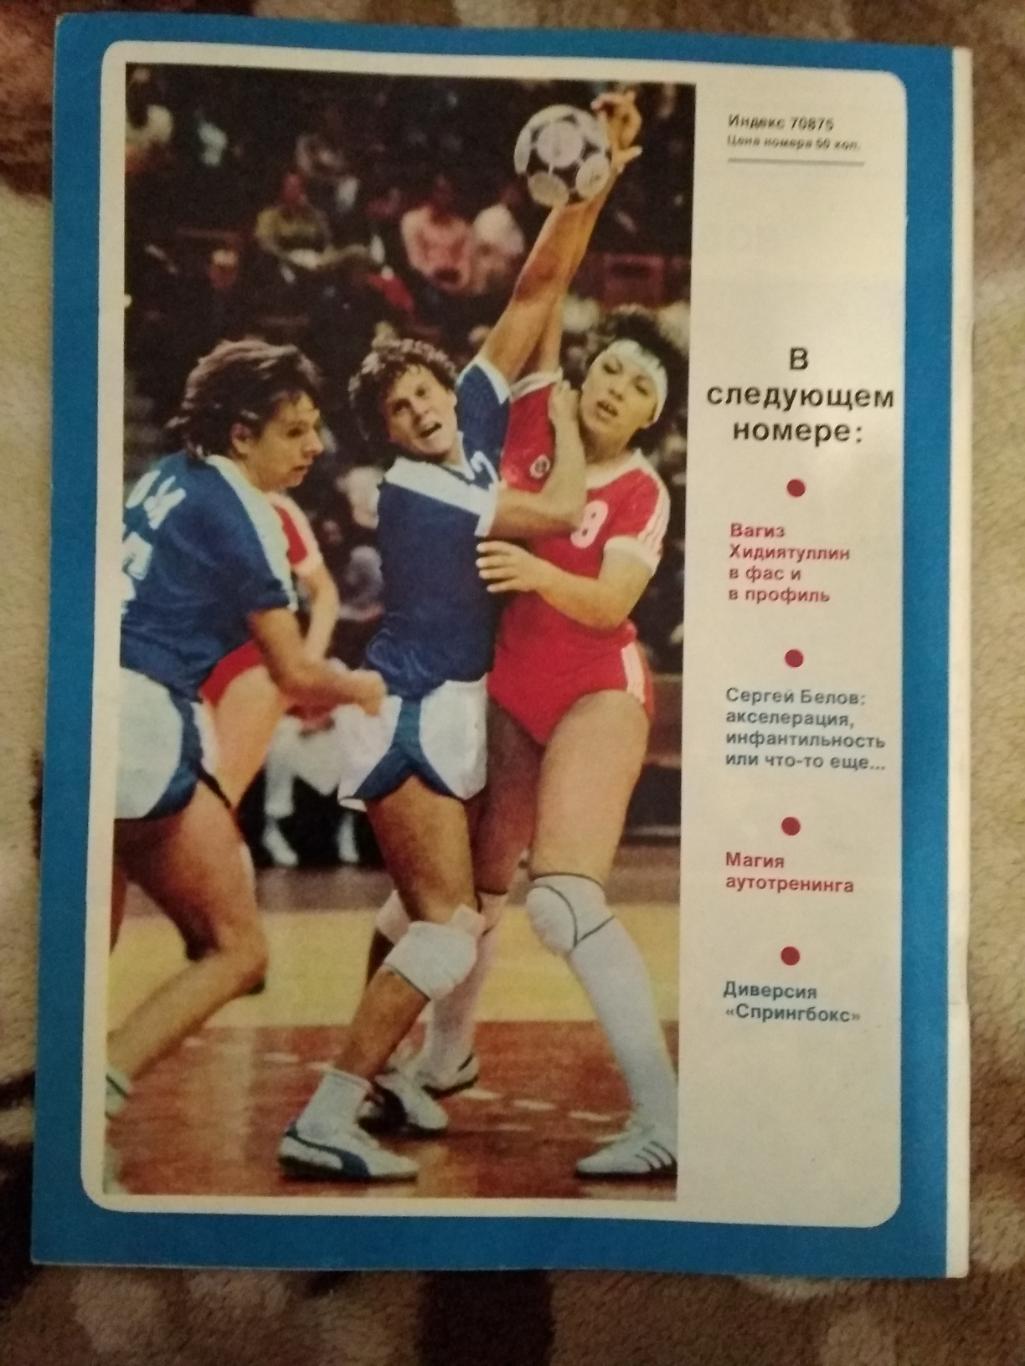 Журнал.Спортивные игры № 11 1986 г. 1